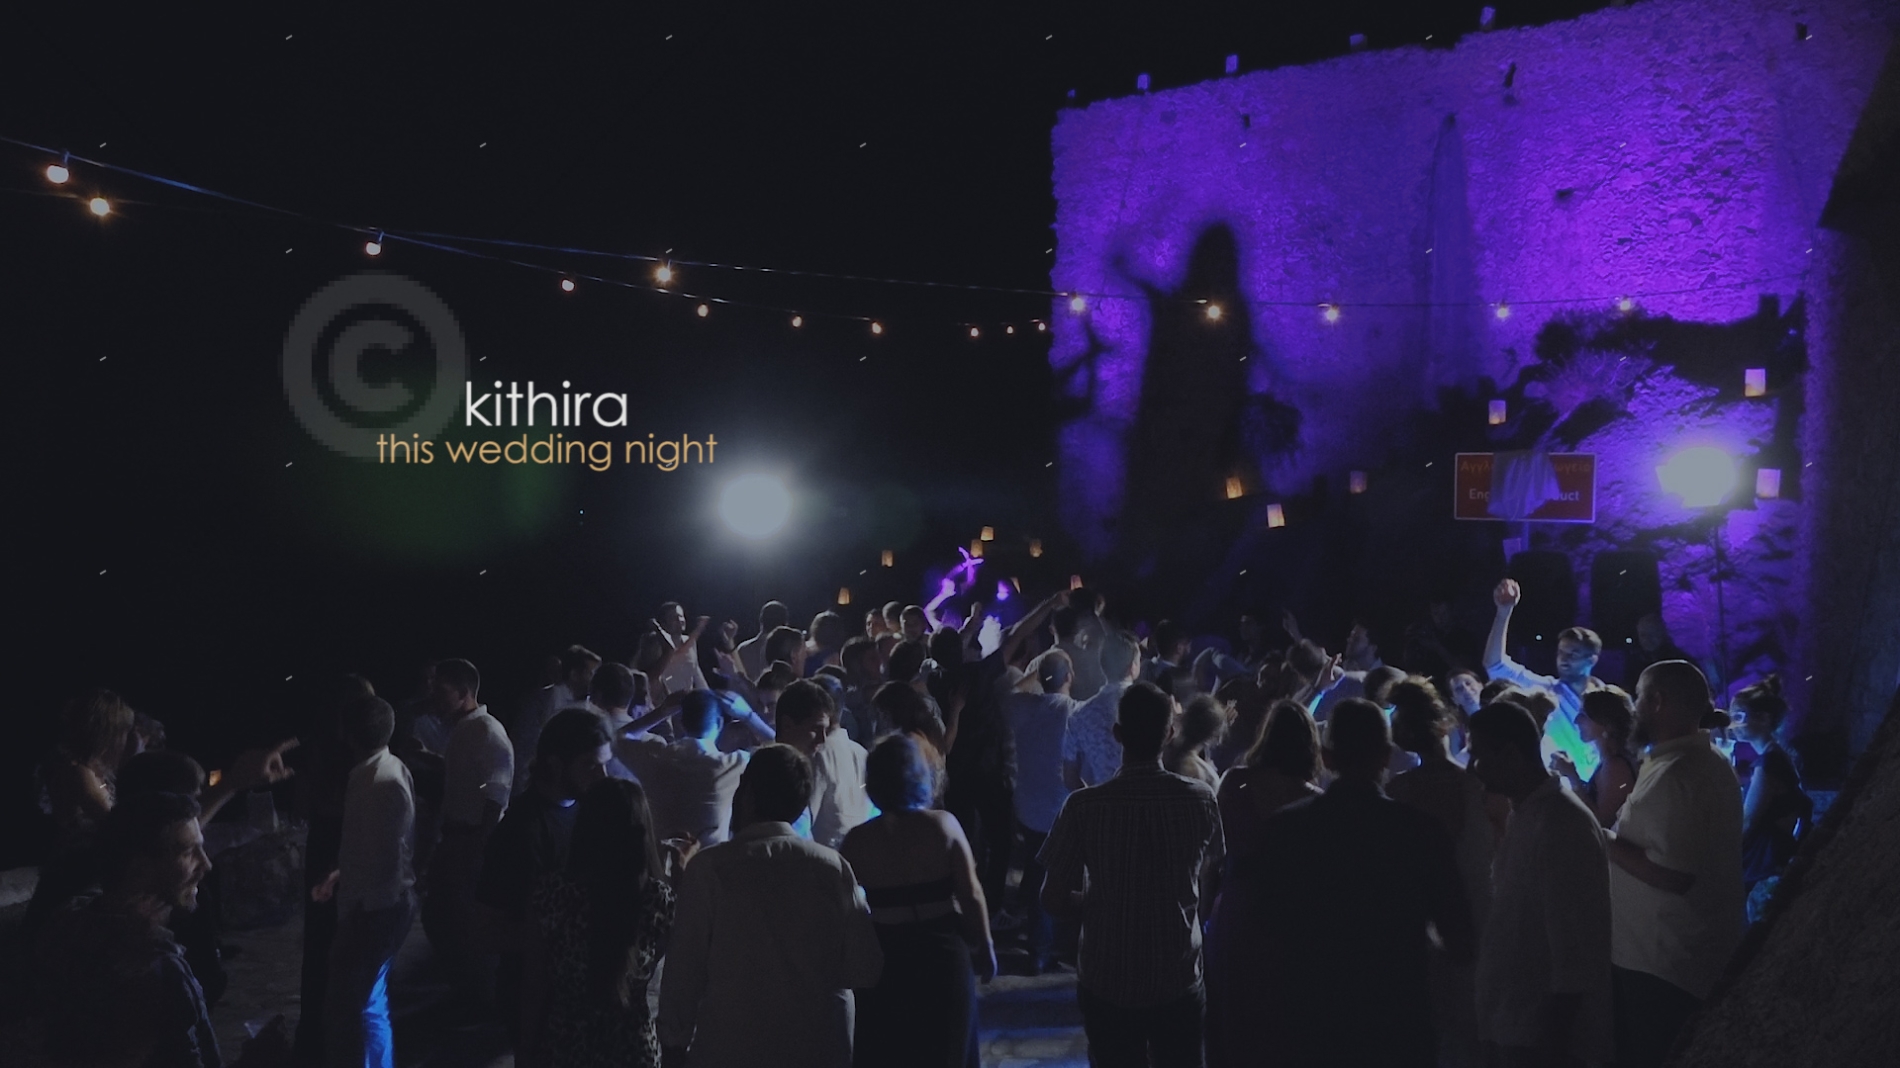 πάρτυ γάμου στα Κύθηρα | Video of an amazing wedding party in Kythira, in kapsali aquadeck!